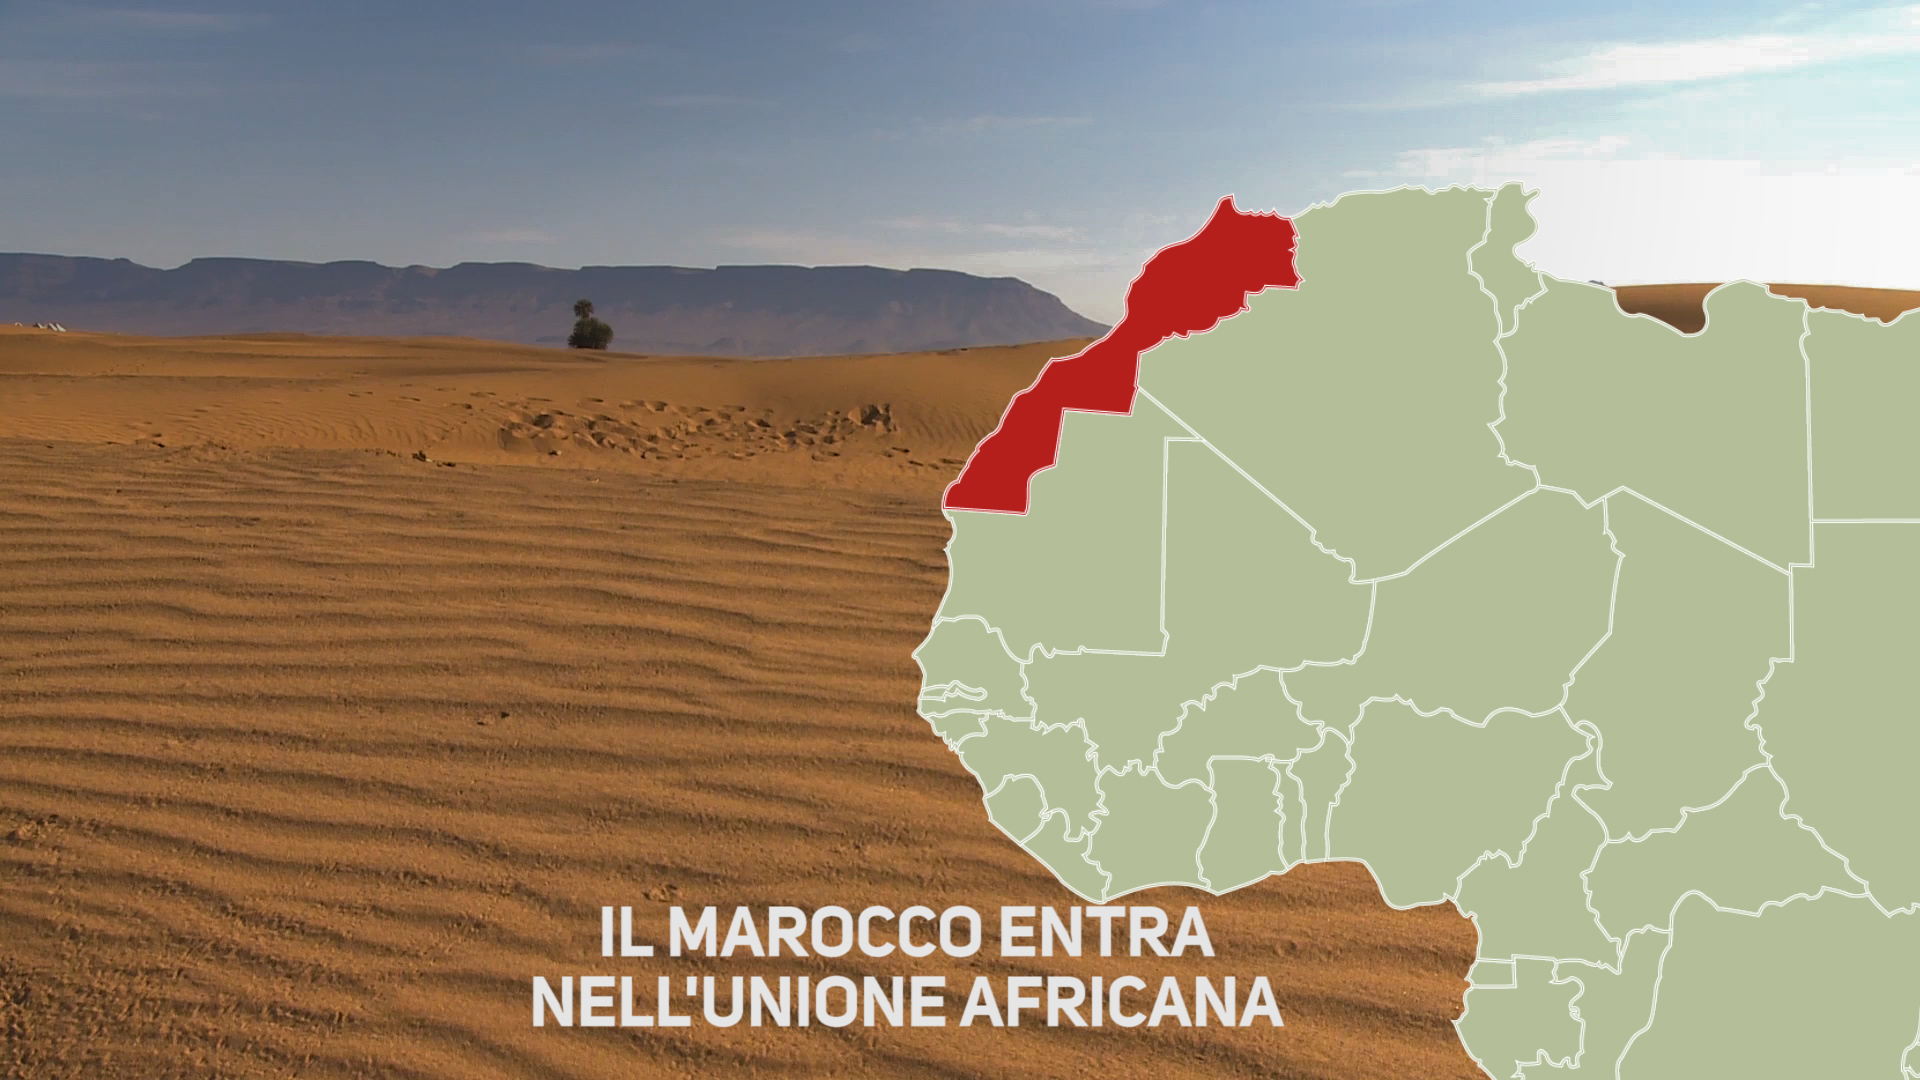 Il Marocco torna nell'Unione Africana, ecco perche'